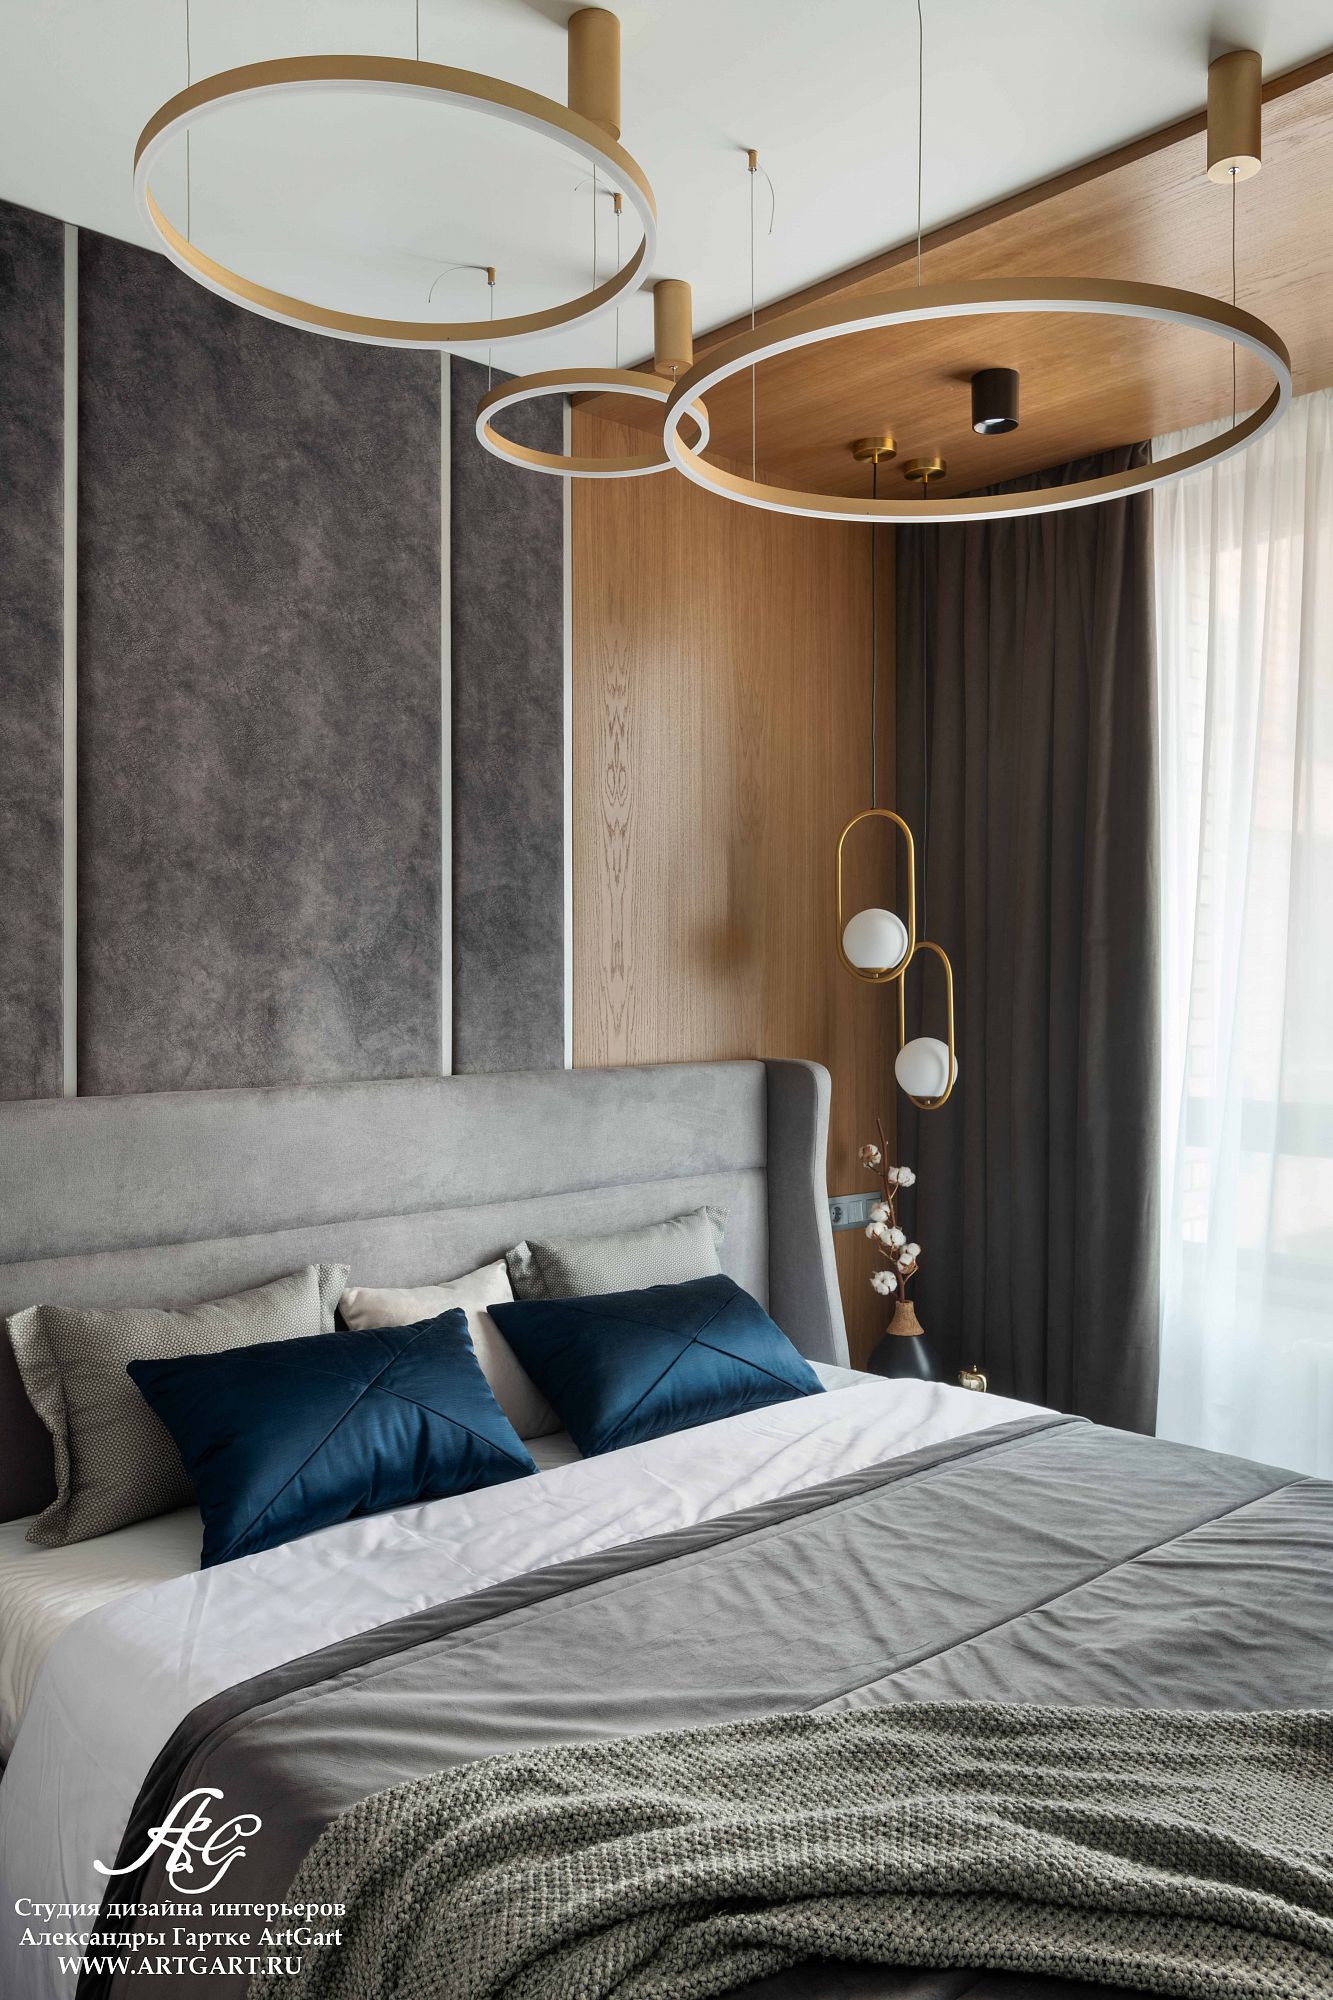 Дизайн проект интерьера спальни 11 кв.м. в стиле арт-деко | Студия Дениса Серова